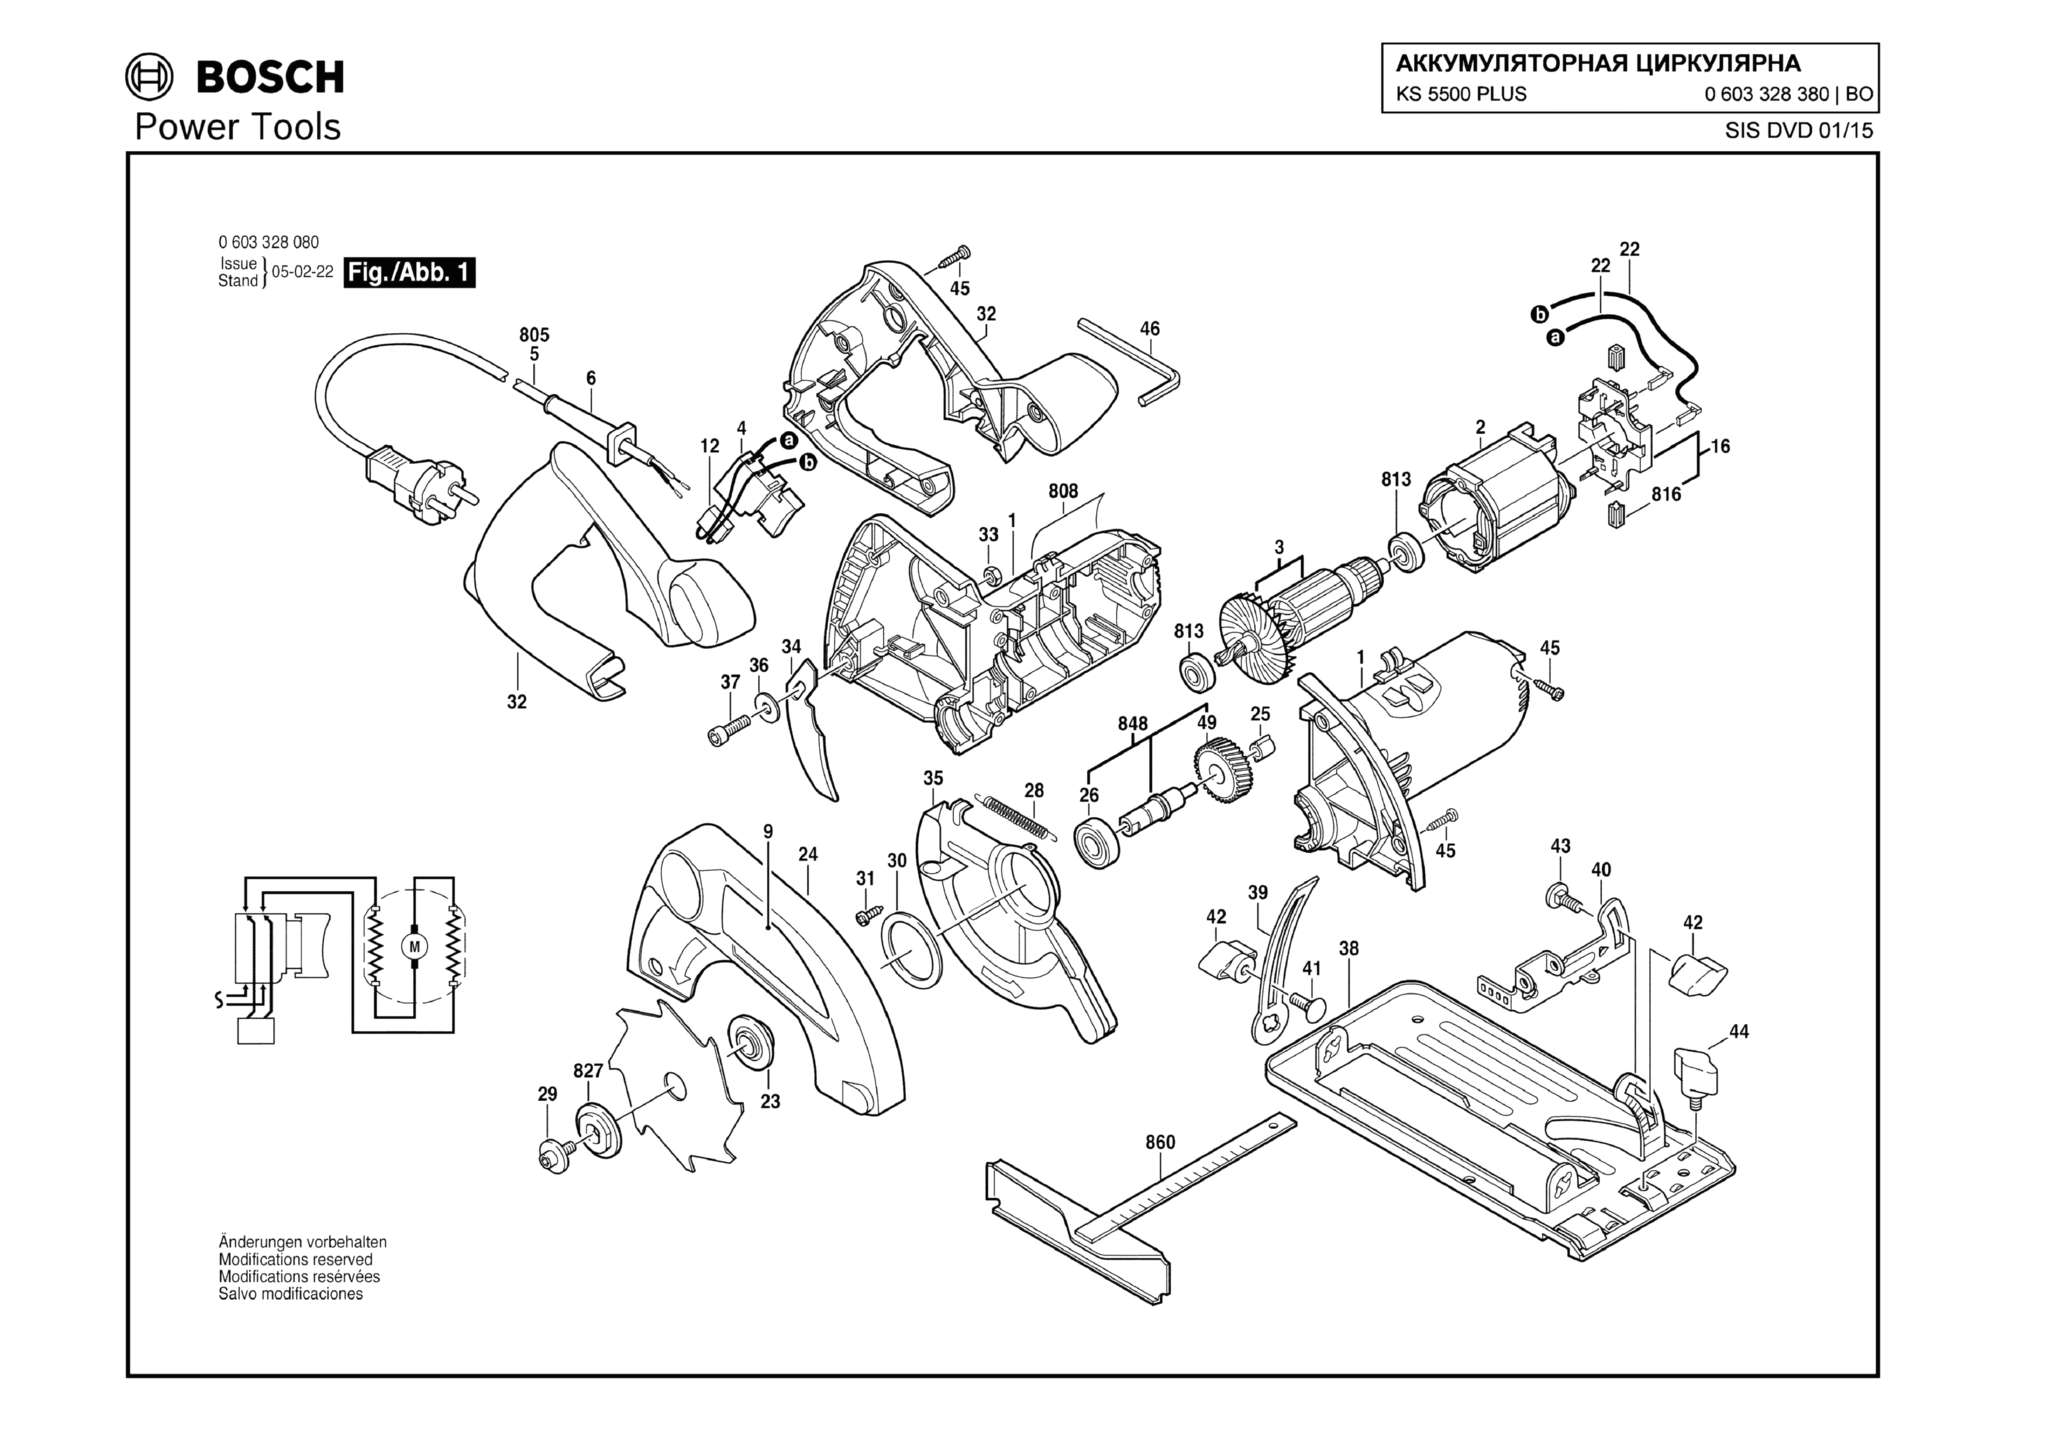 Запчасти, схема и деталировка Bosch KS 5500 PLUS (ТИП 0603328380)